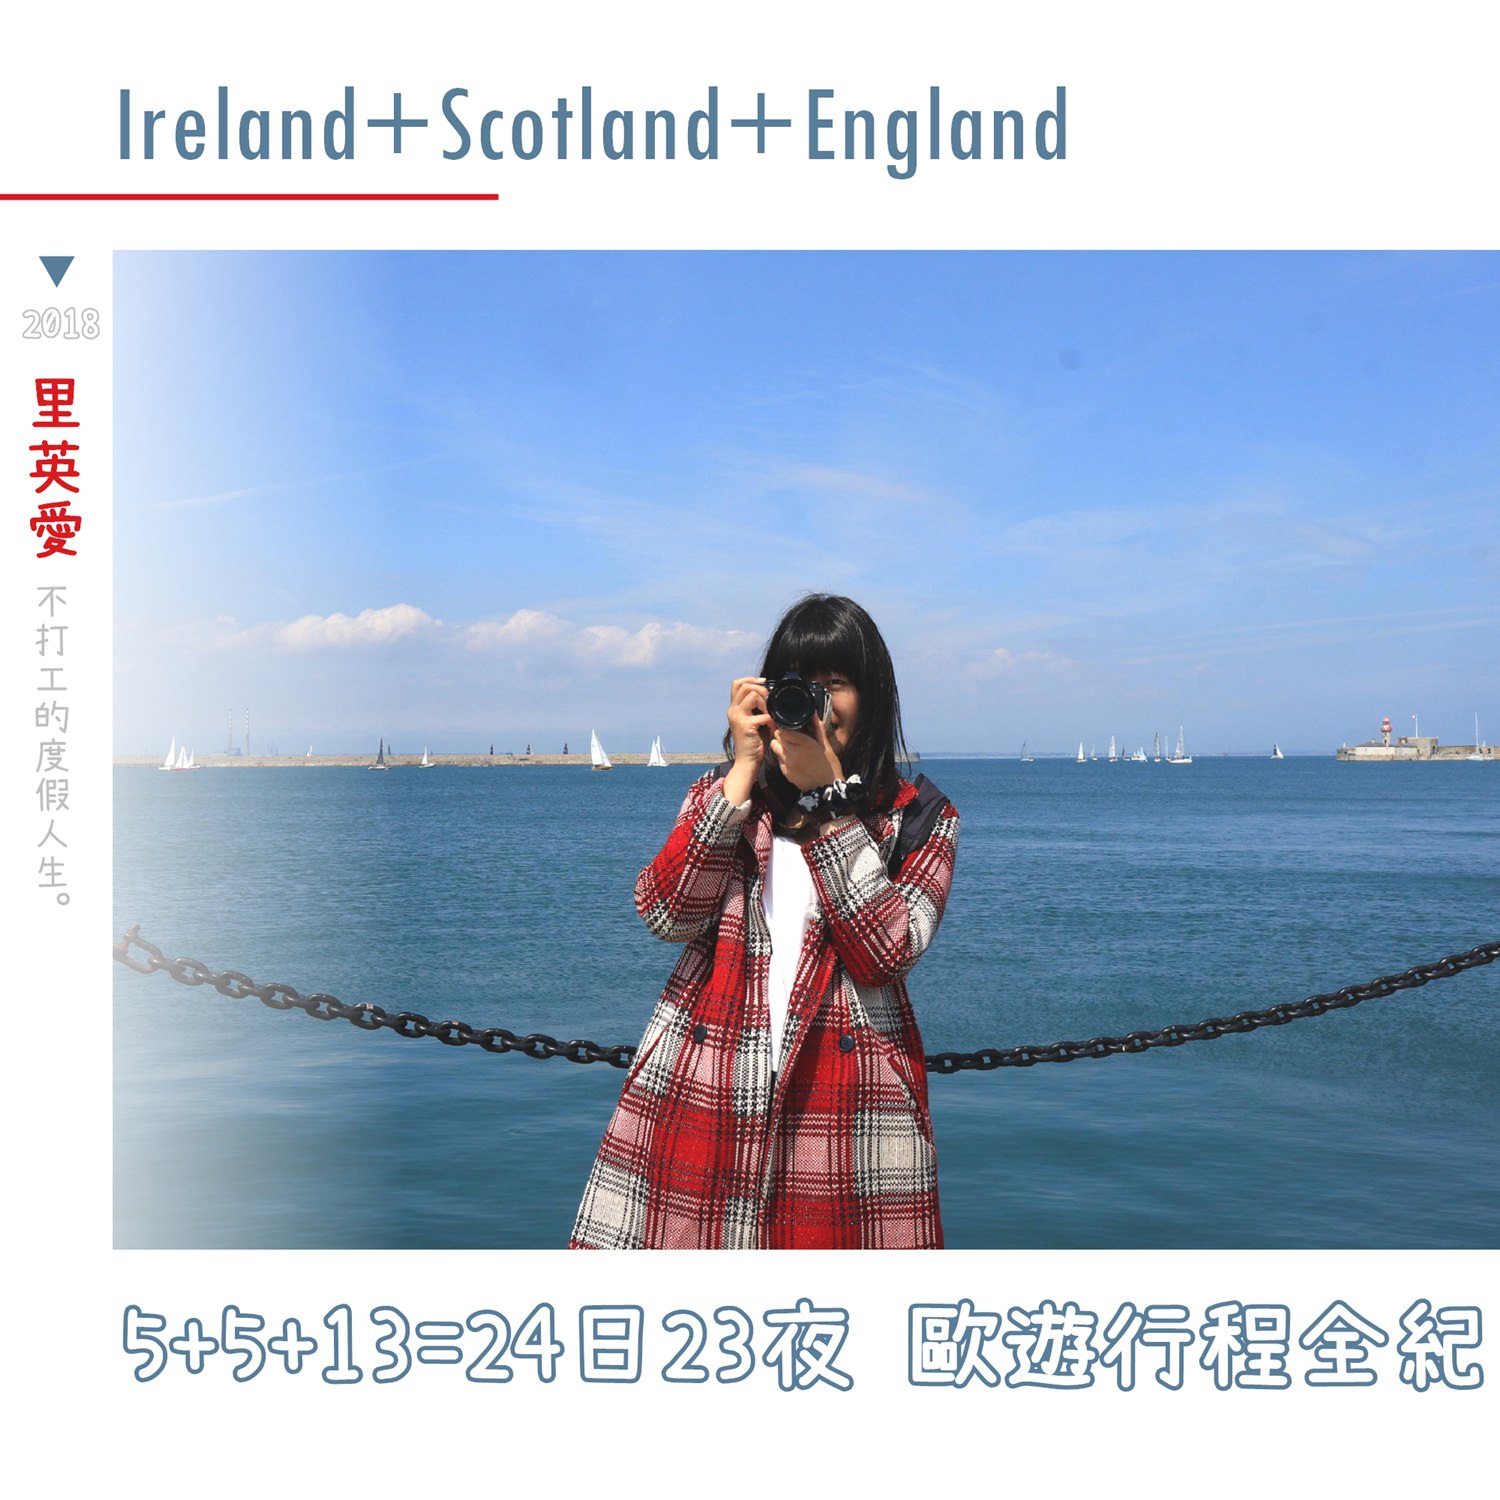 歐洲旅遊：愛爾蘭及英國（含北愛爾蘭、蘇格蘭、英格蘭）行程規劃時間表完全紀錄